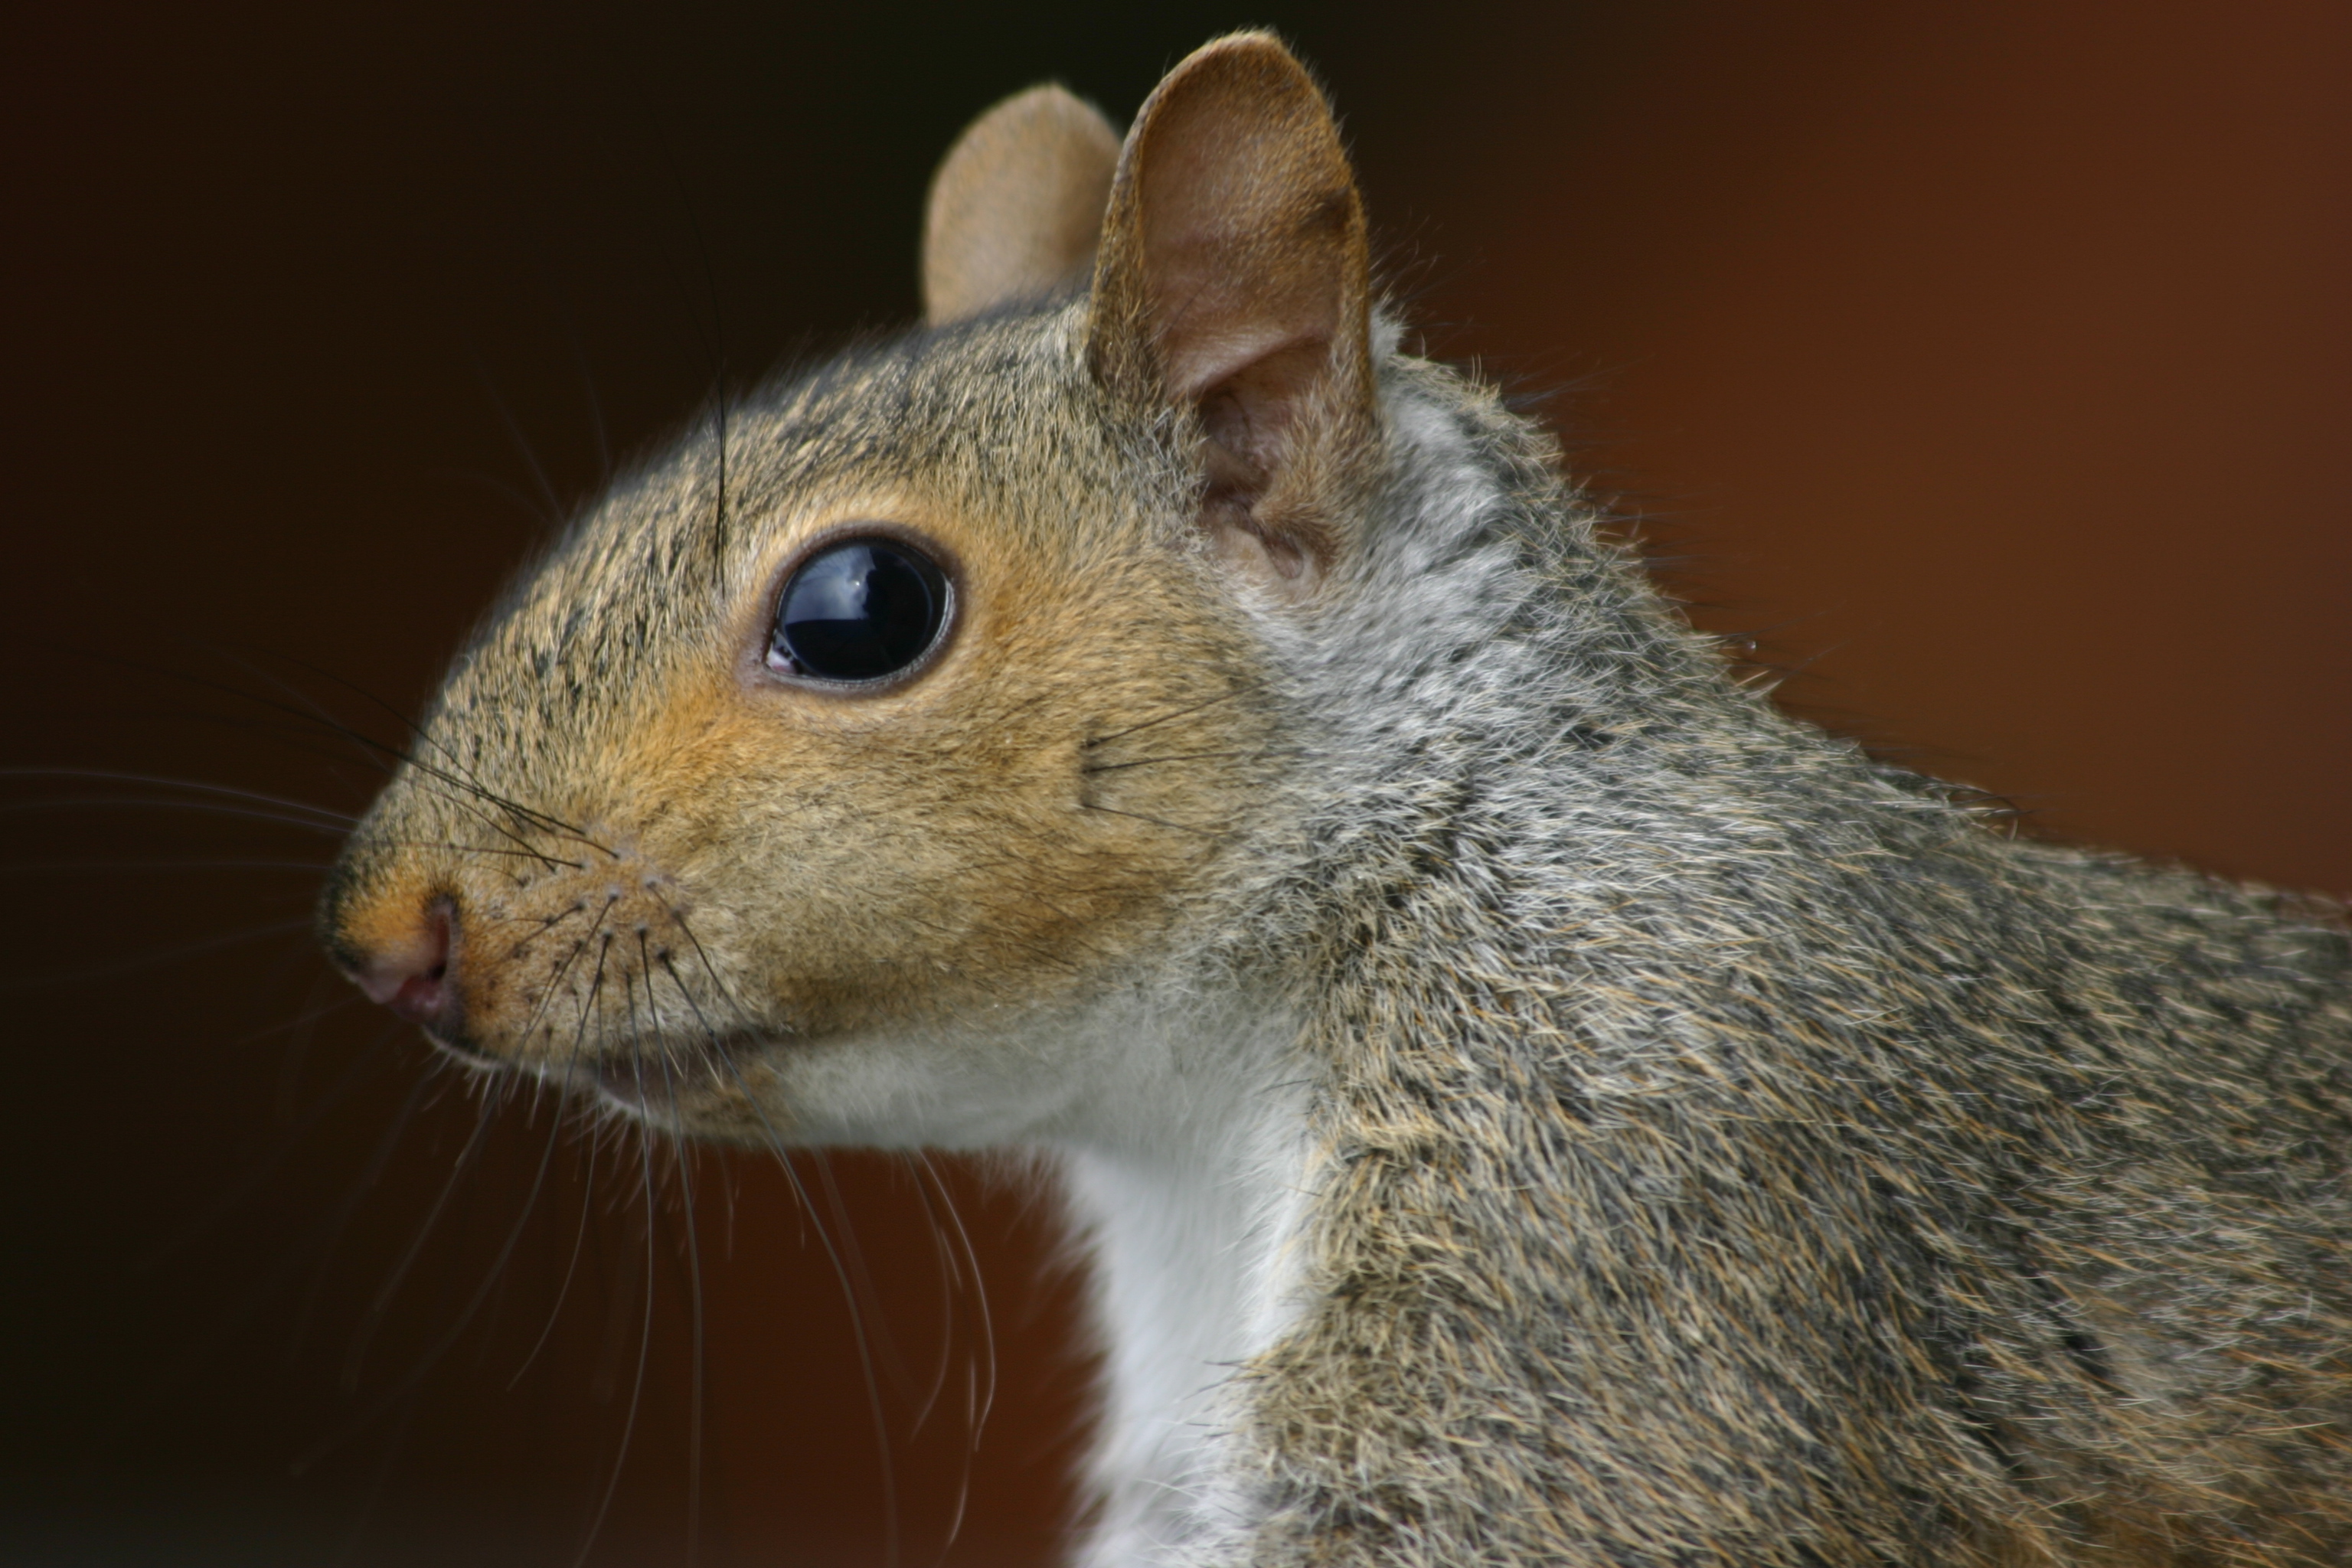 File:Squirrel closeup profile.gk.jpg - Wikimedia Commons